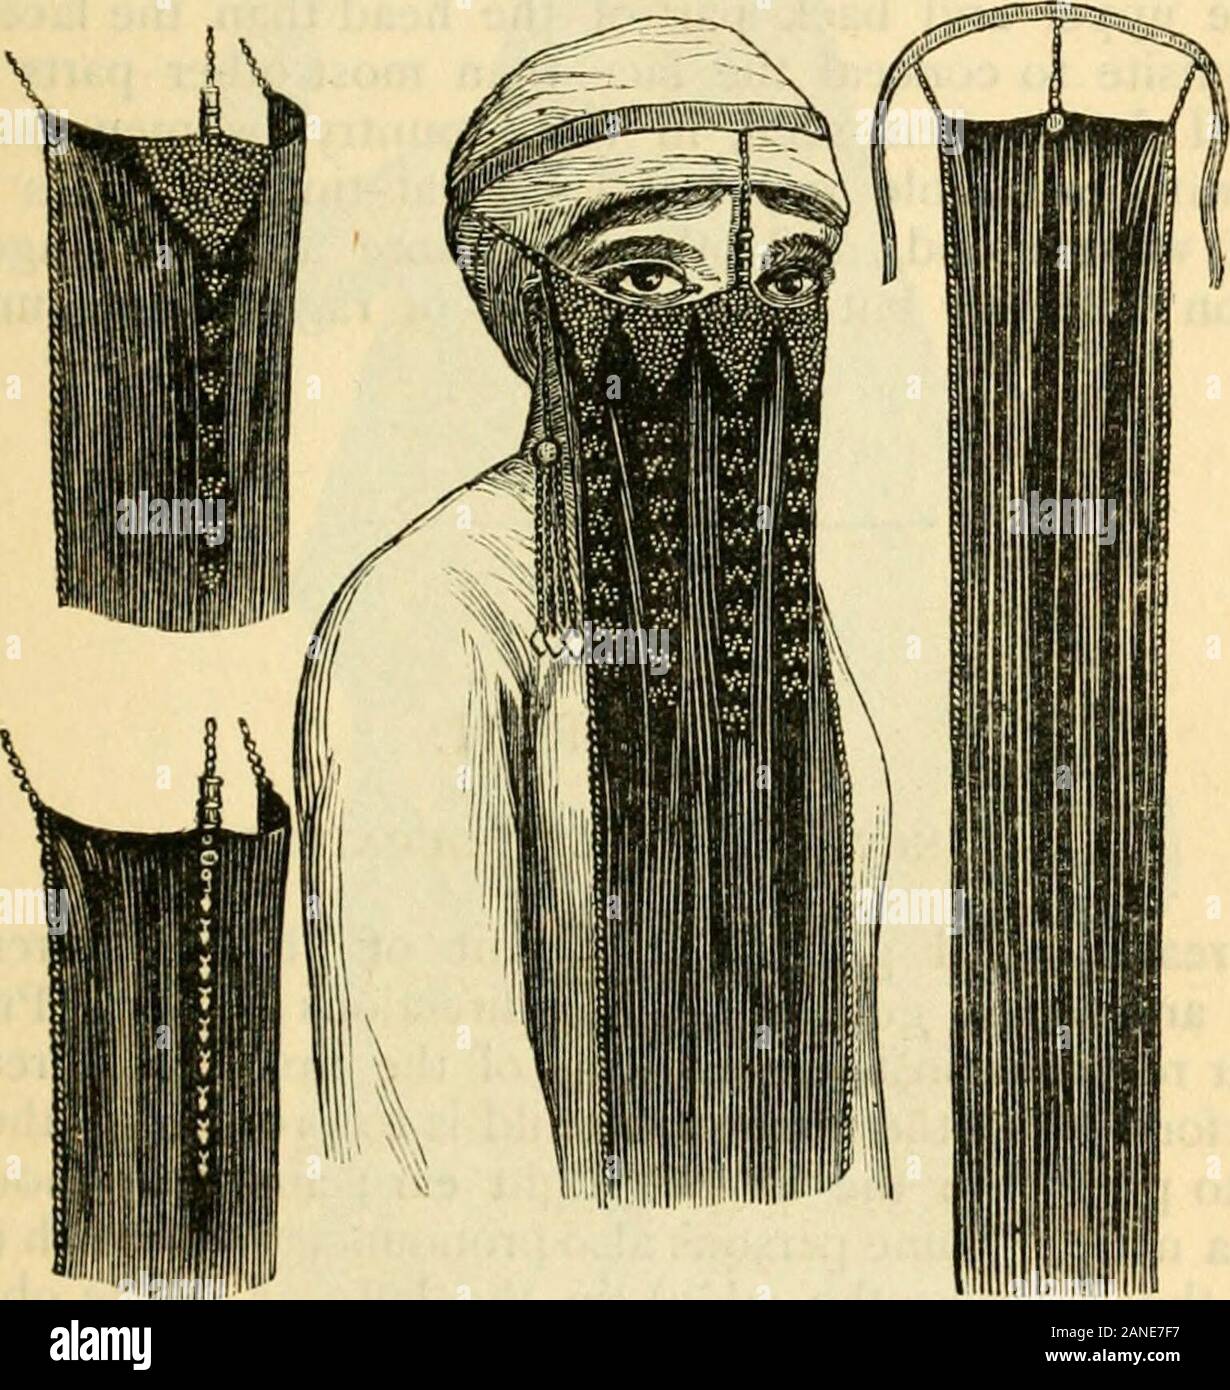 Una cuenta de los usos y costumbres de los modernos egipcios, escritos en  Egipto durante los años 1833-1835 . FELLAH MUJER, pañuelo de seda negra  (llamado asbeh ), con un borde de